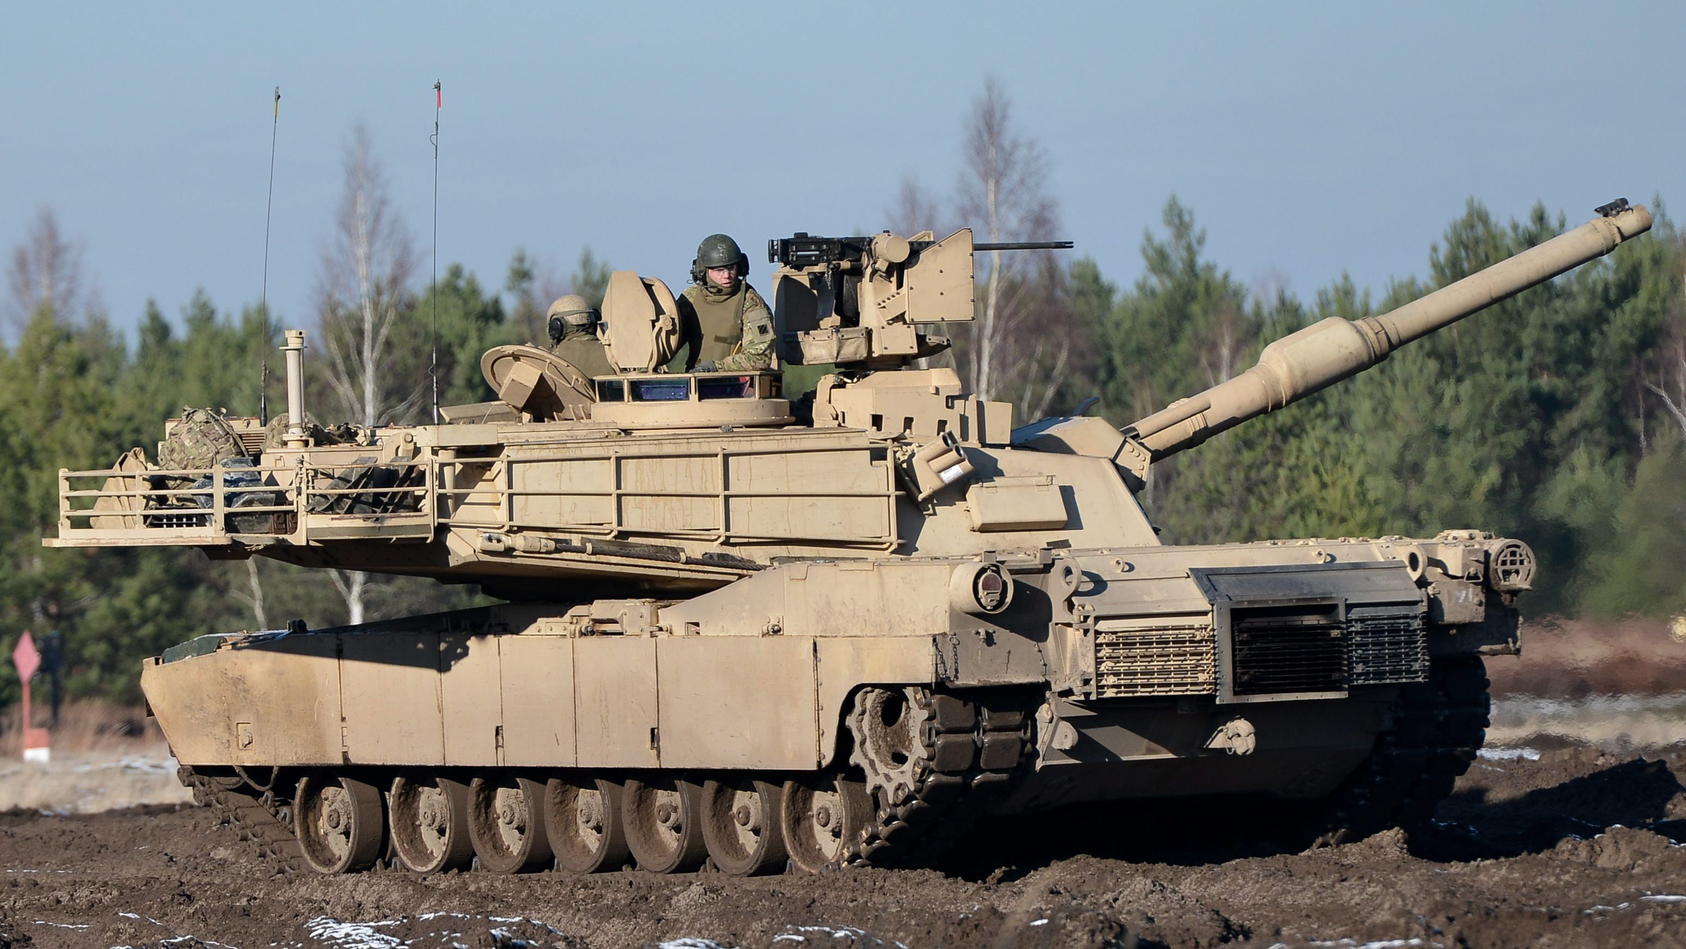 ARCHIV - 24.11.2015, Polen, Swietoszow: Leopard 2 A4 -Panzer der polnischen Armee bei gemeinsamen Übungen polnisch-amerikanischer Panzereinheiten auf dem Truppenübungsplatz Swietoszow. Im Streit um die Lieferung von Leopard-Kampfpanzern an die Ukrain